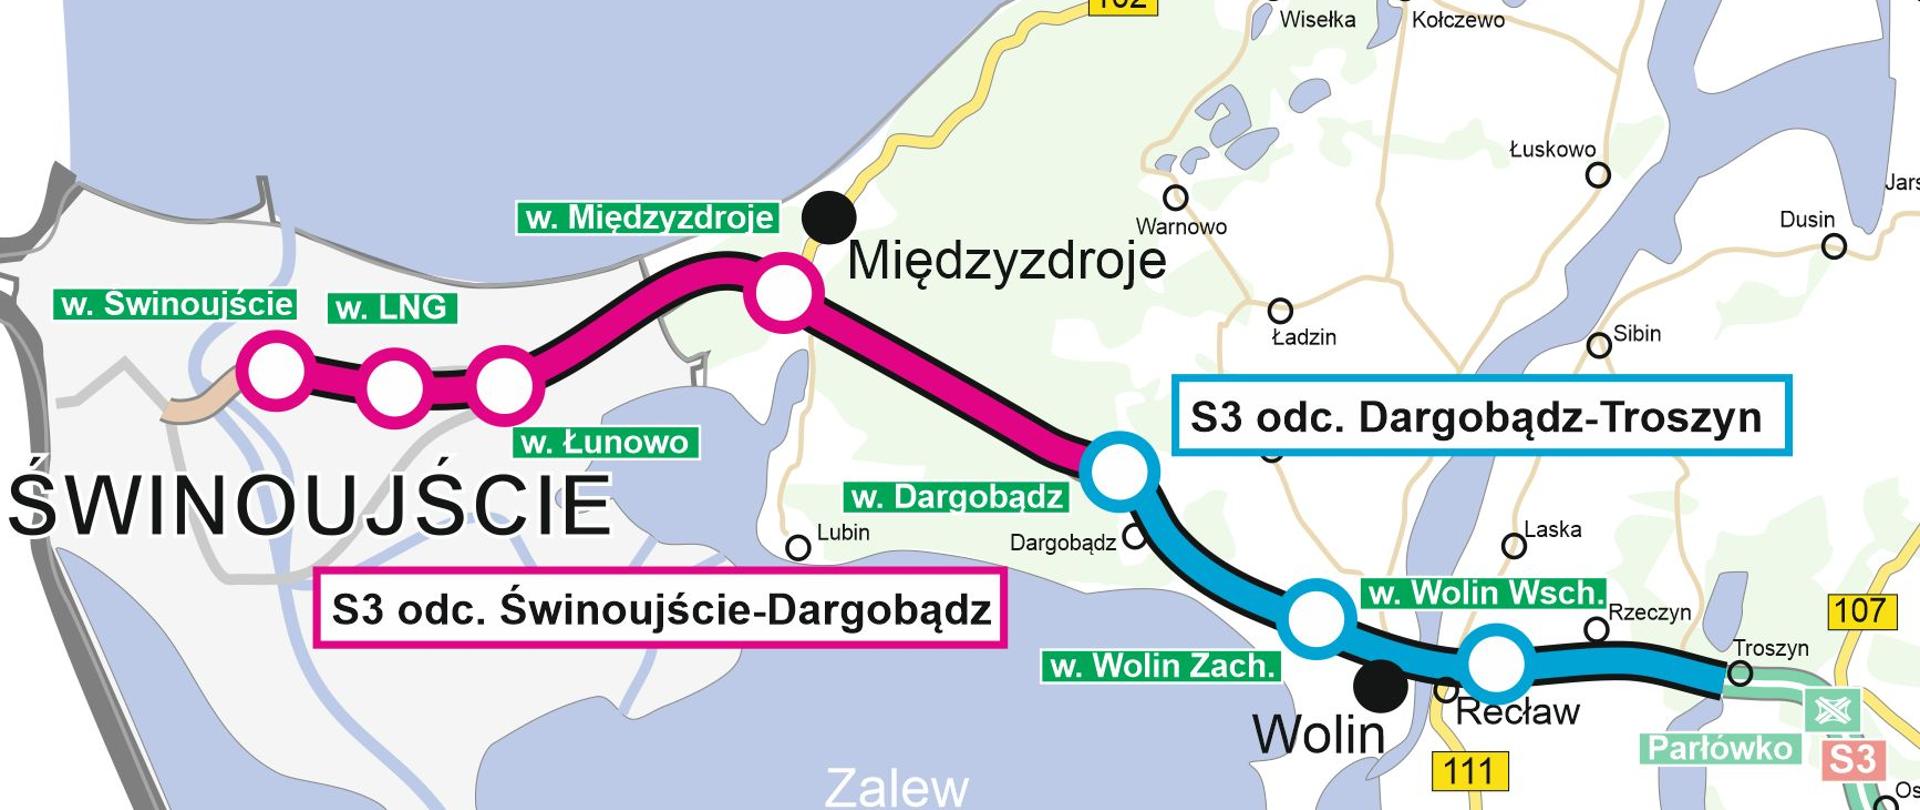 Przebieg drogi ekspresowej S3 w woj. zachodniopomorskim